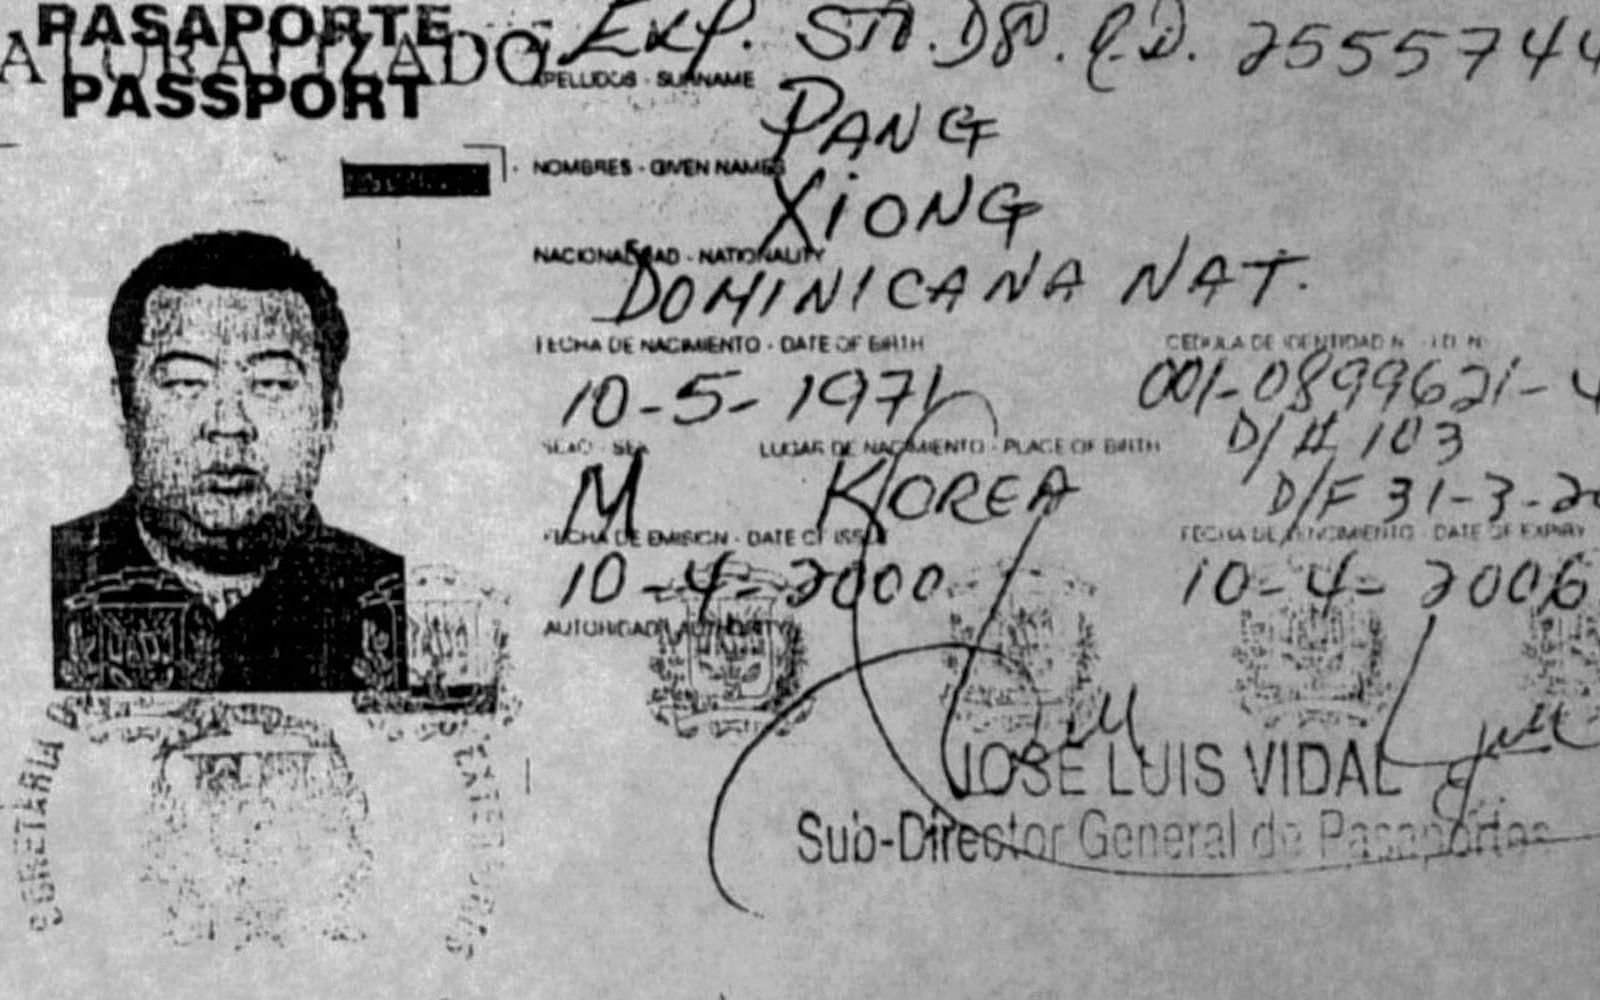 En svartvit kopia av Kim Jon Nams pass som distribuerades till pressen efter att det blev känt att Kim Jong Nam omhändertogs av migrationsverket på New Tokyo International Airport. FOTO: TT